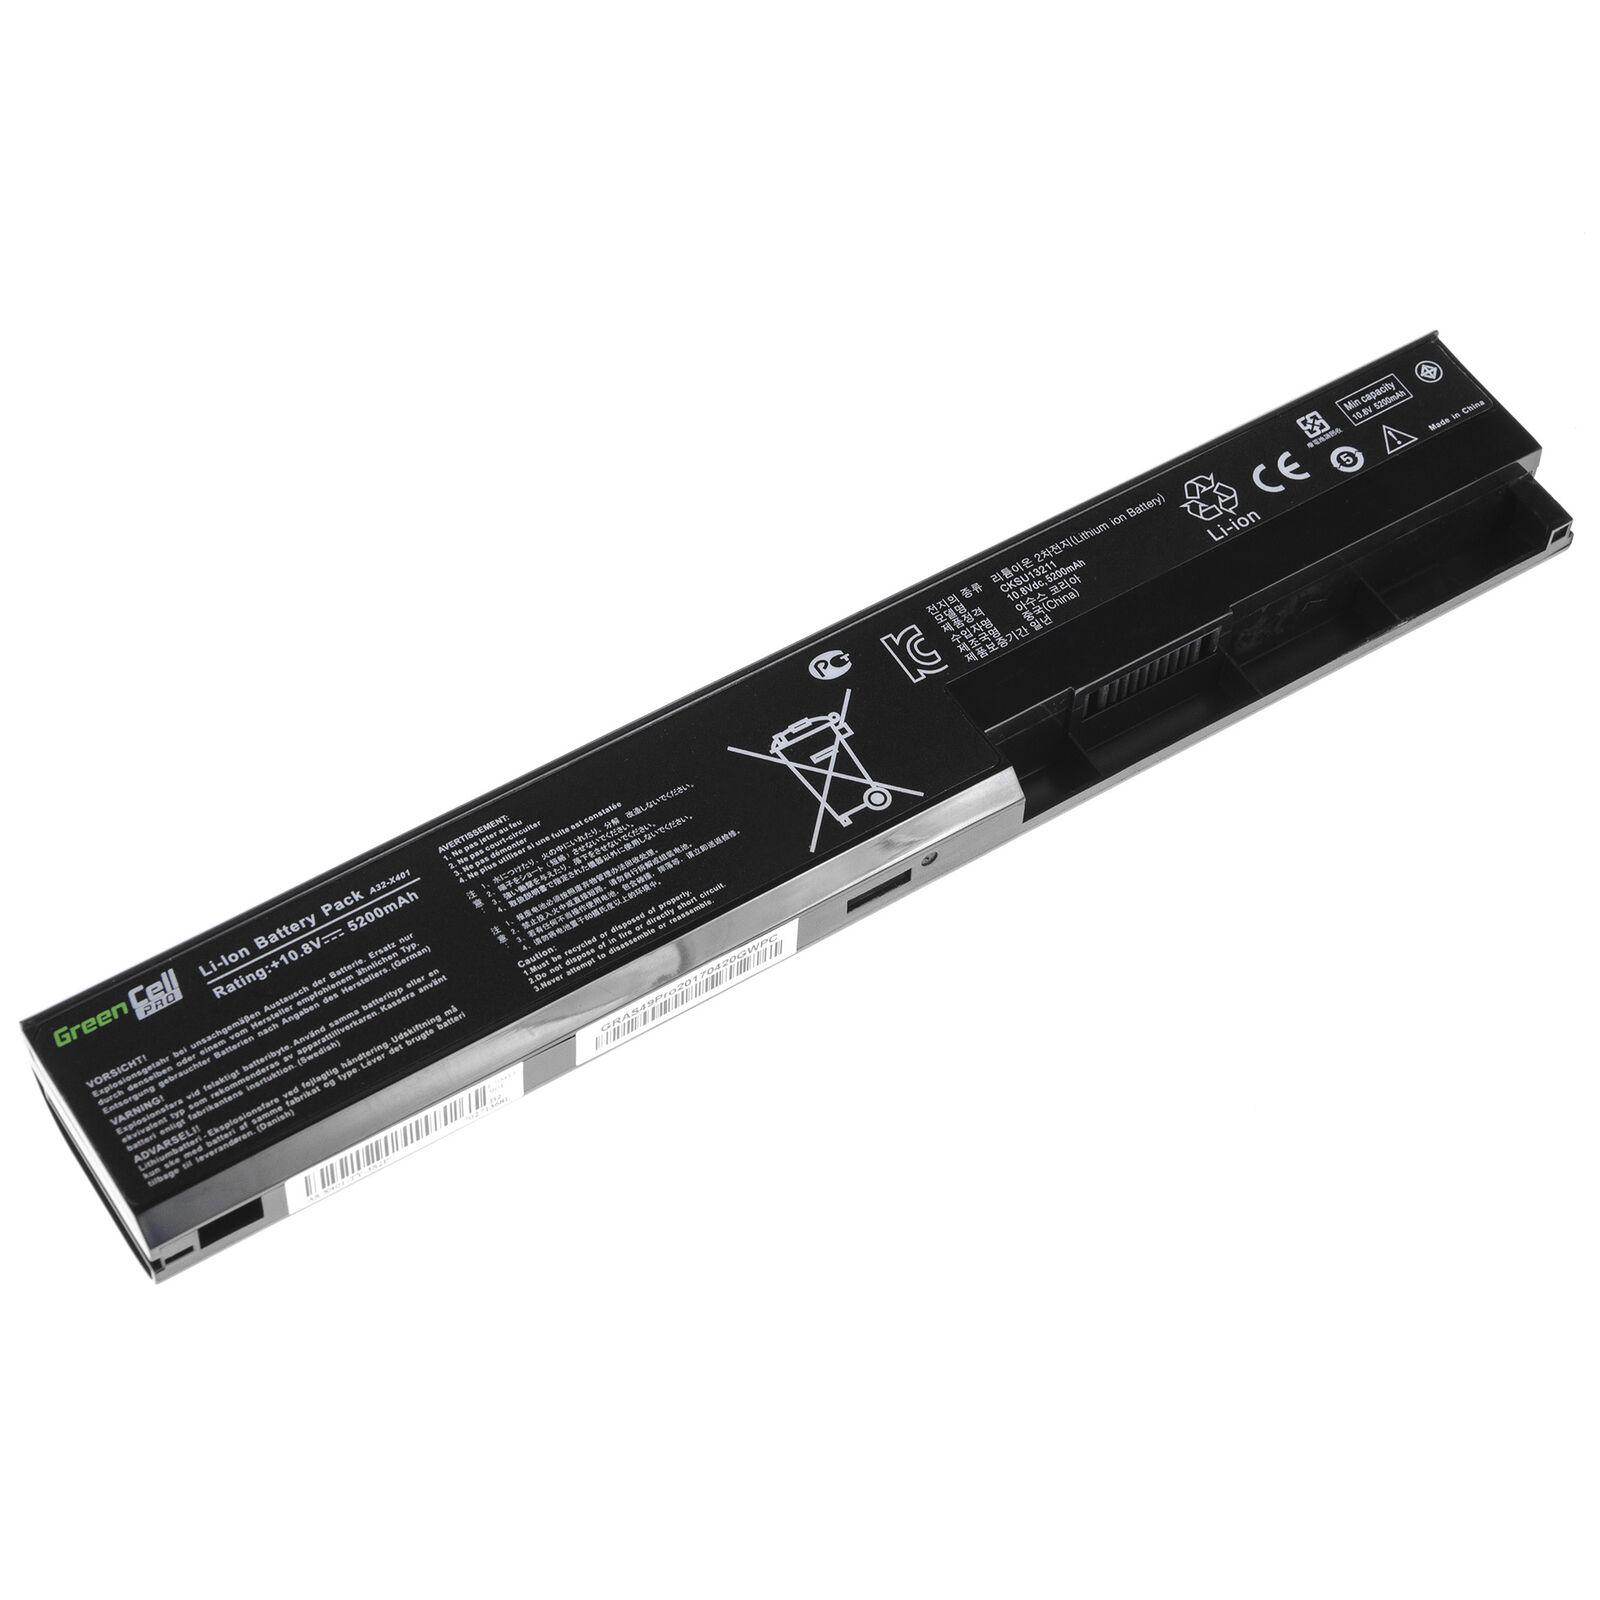 Batterie pour ASUS F301 F401 X301 X401 X501 A31-X401 A32-X401 A41-X401 A42-X401(compatible)